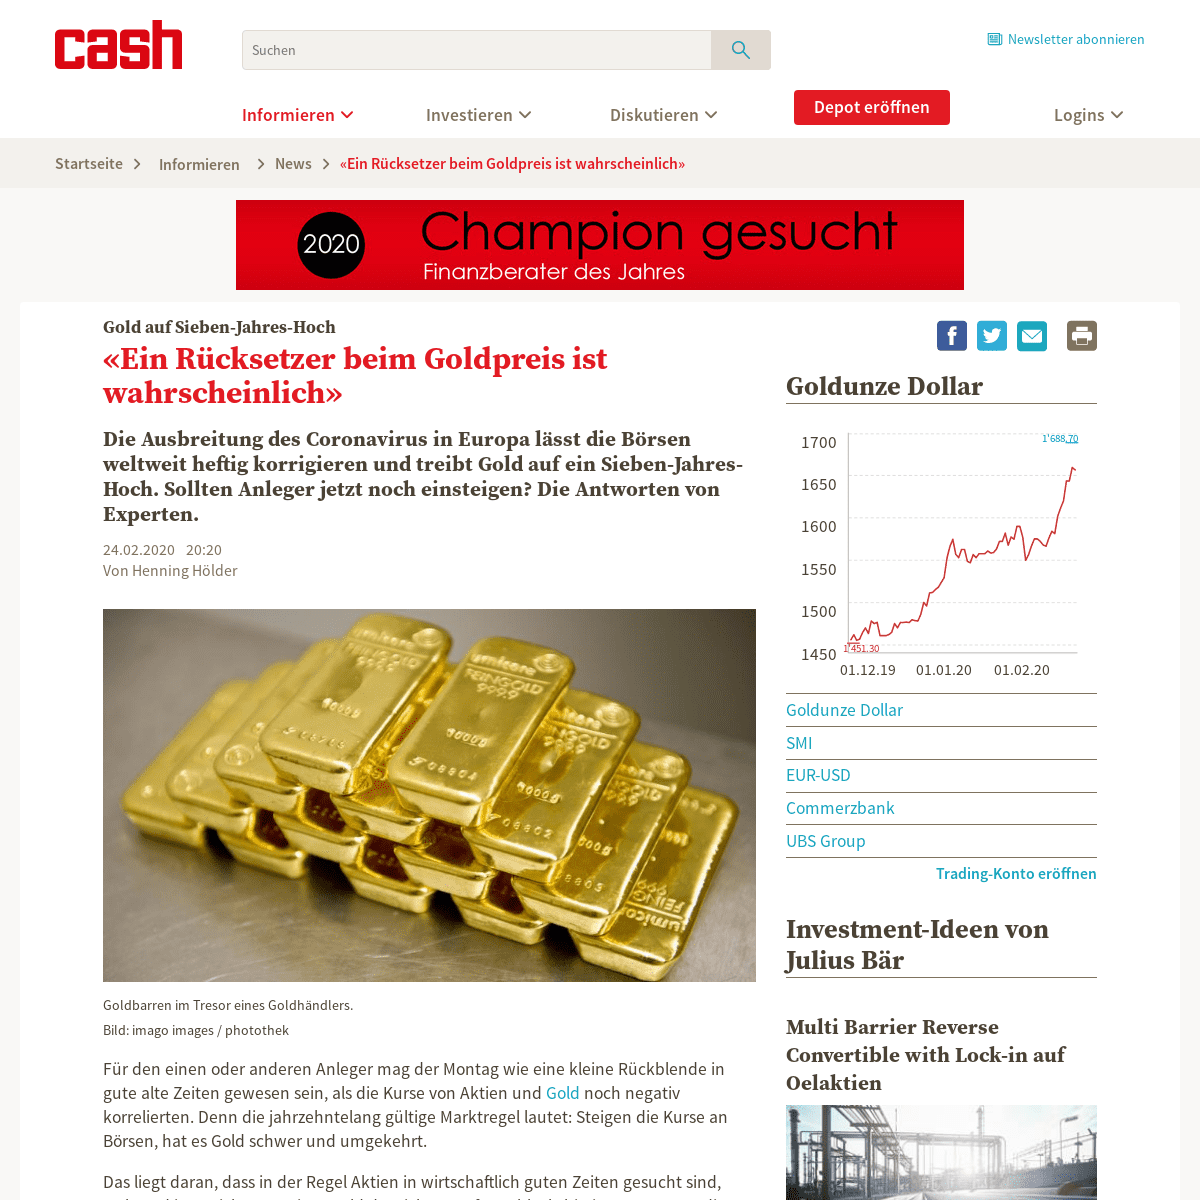 A complete backup of www.cash.ch/news/top-news/gold-auf-sieben-jahres-hoch-ein-ruecksetzer-beim-goldpreis-ist-wahrscheinlich-148